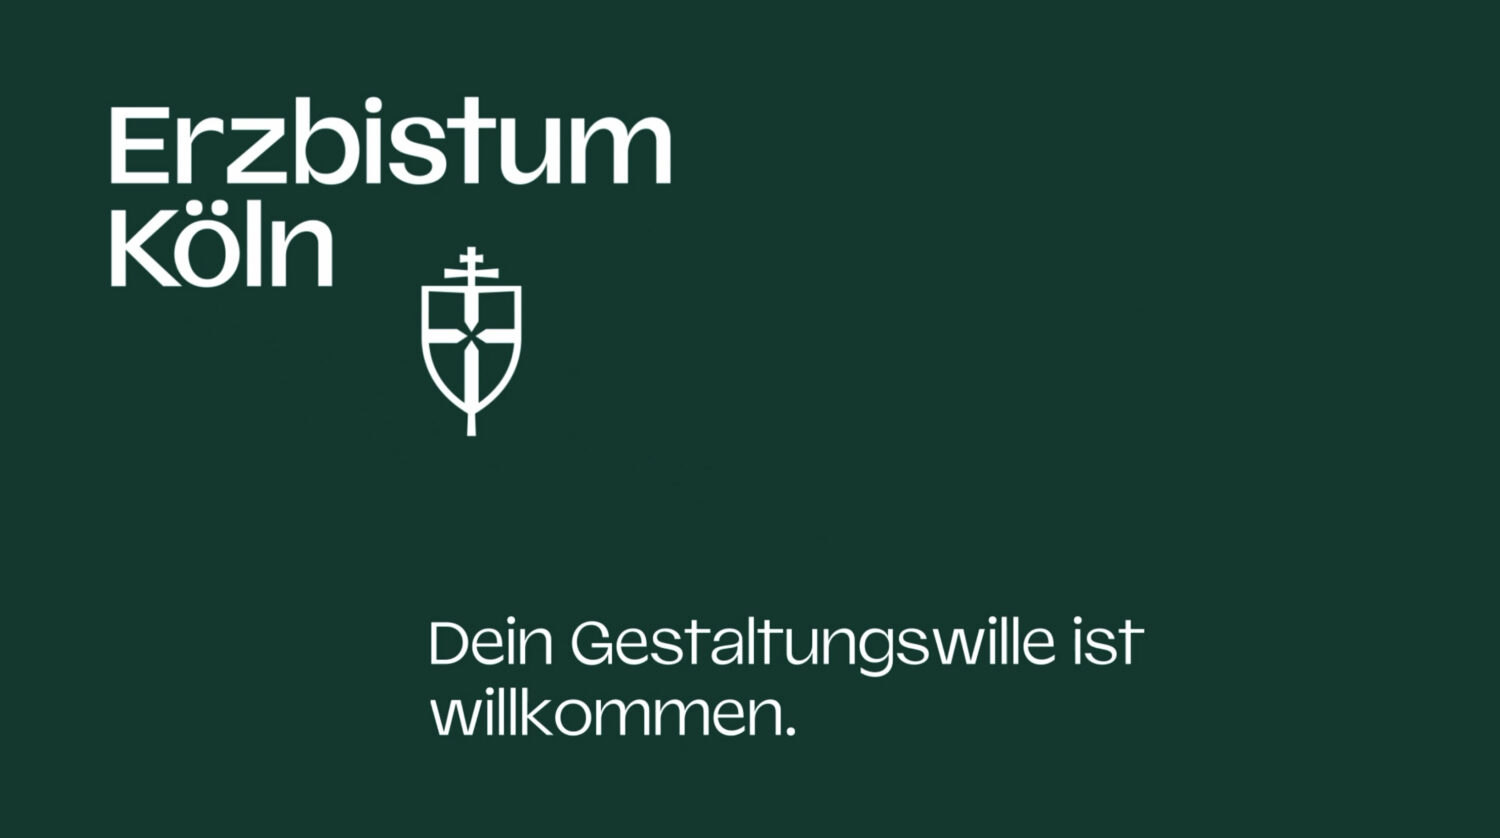 Erzbistum Köln Corporate Design – Anwendungsbeispiele, Quelle: Erzbistum Köln